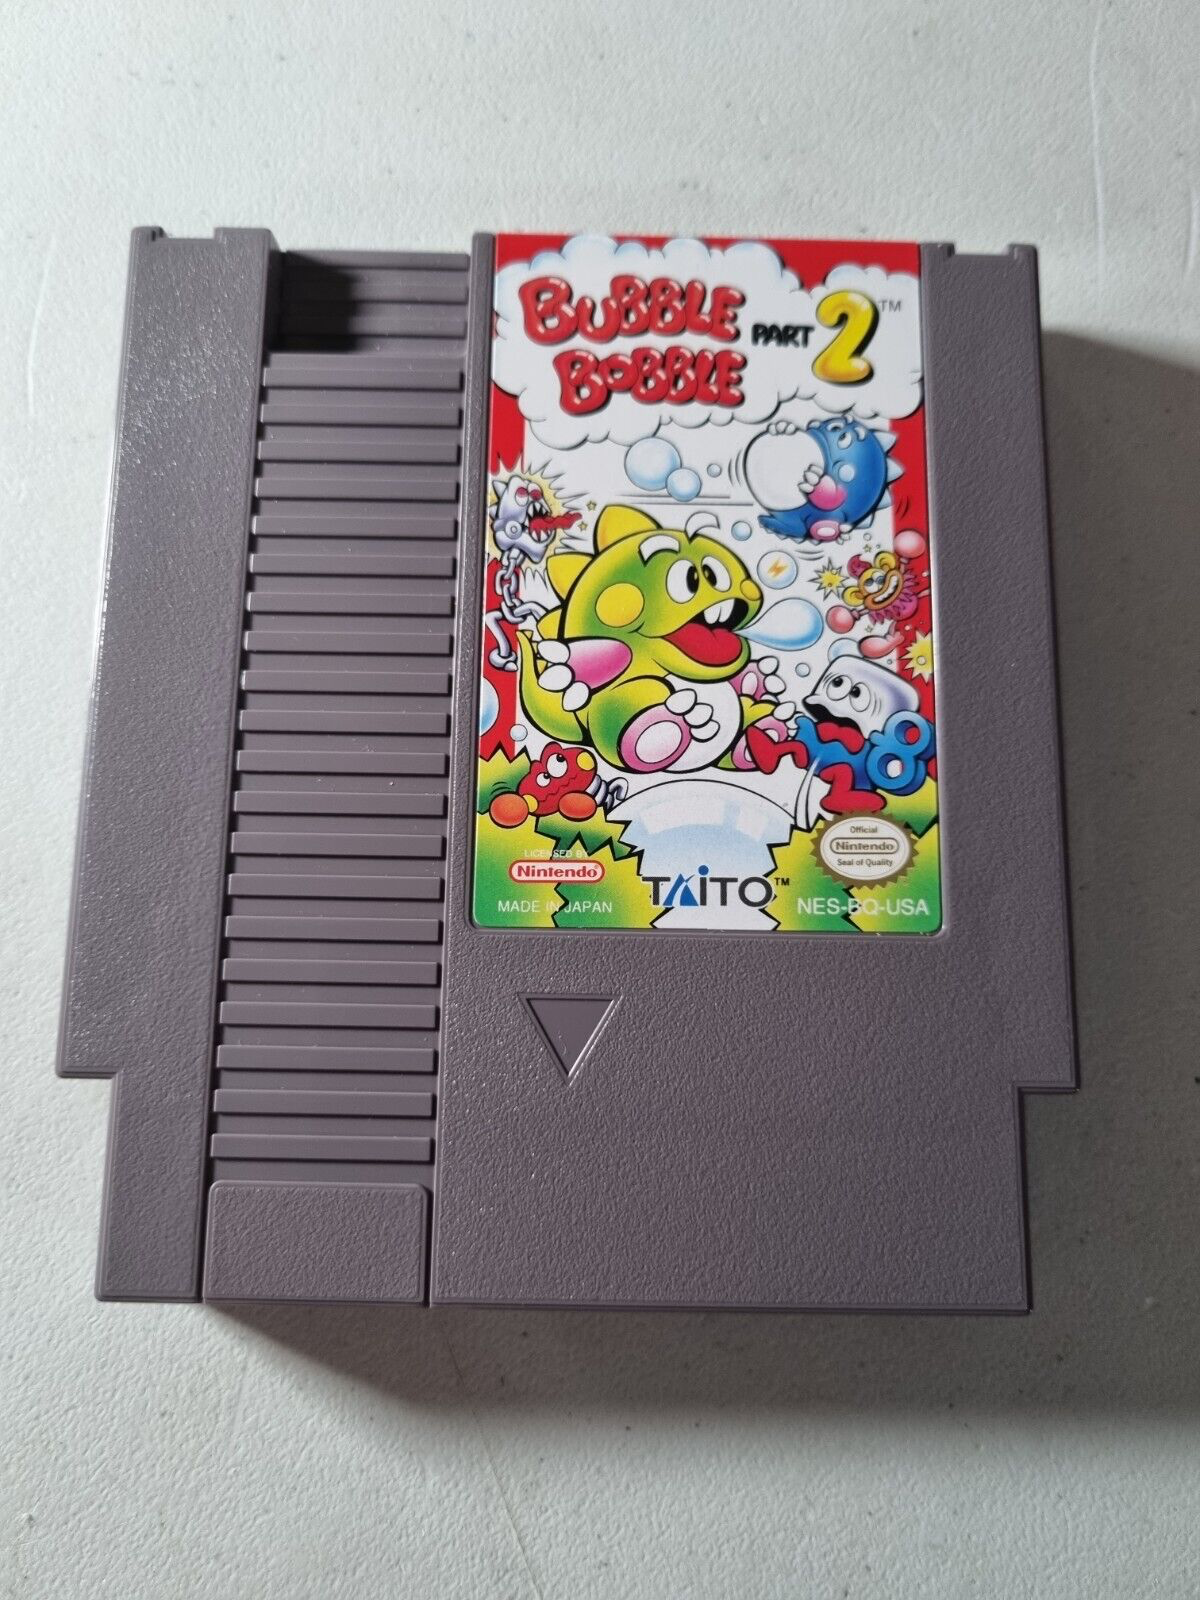 Bubble Bobble Part 2 - NES